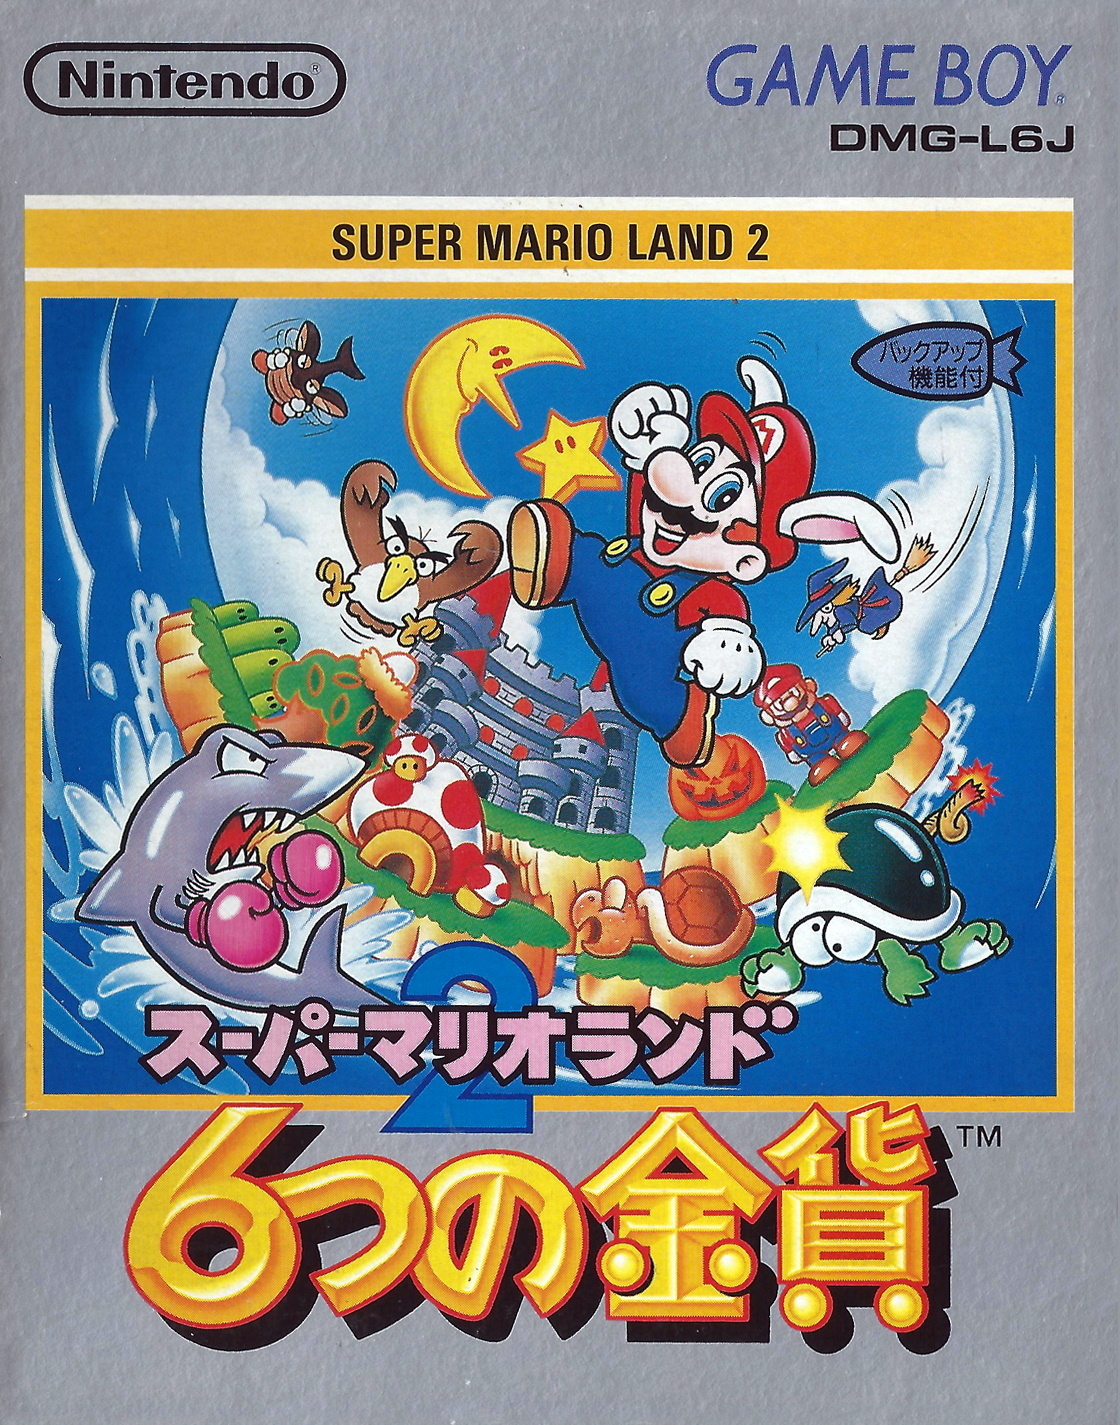 Super Mario Land 2: 6 Golden Coins Details Games Database